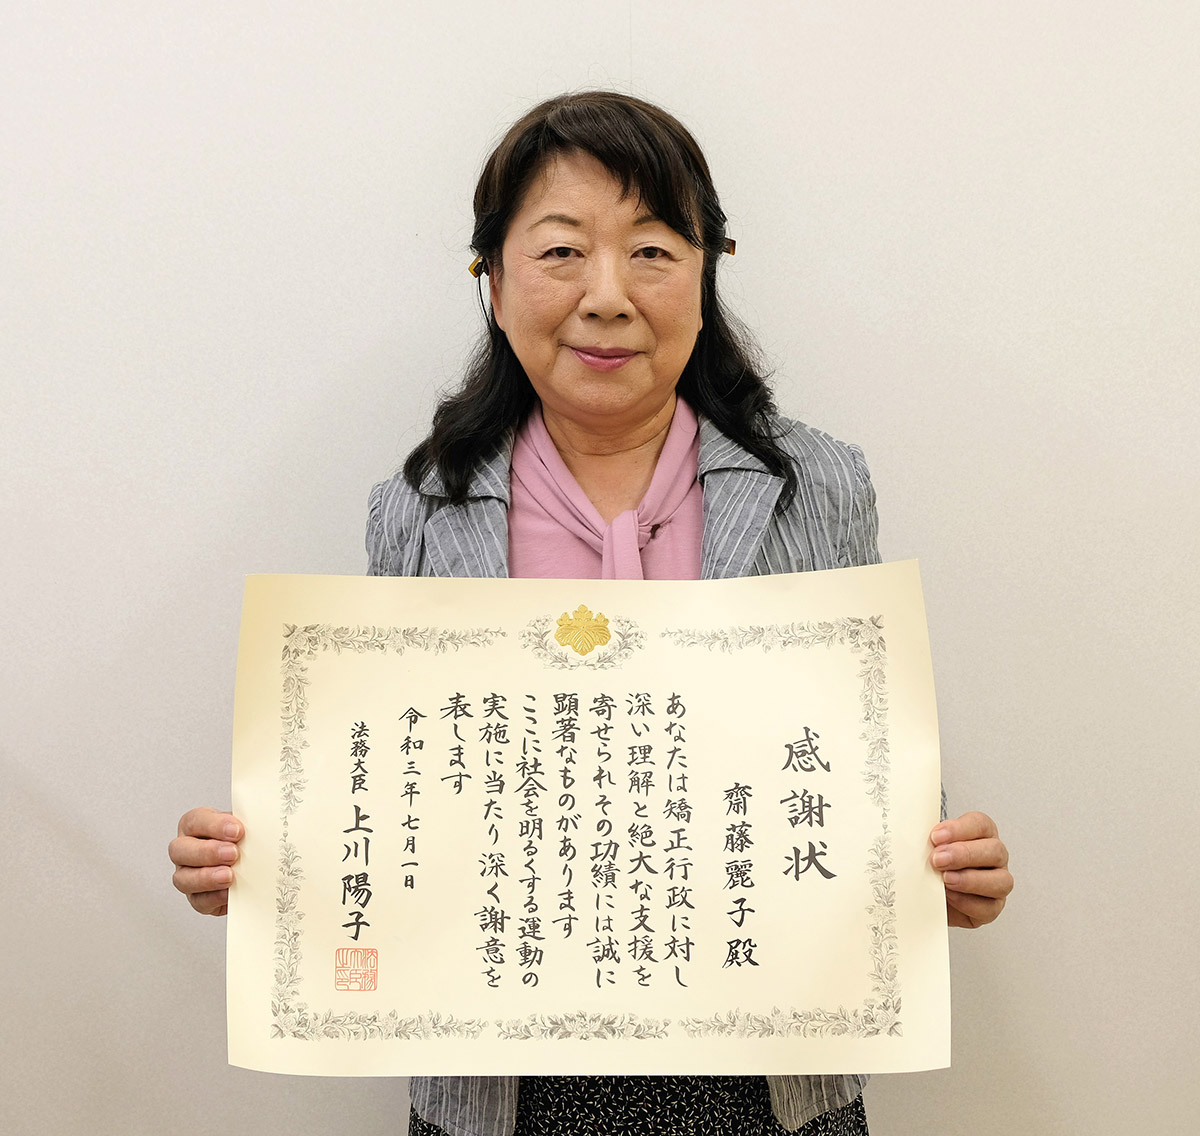 健康管理センター長 齋藤麗子名誉教授に 上川陽子法務大臣から感謝状が授与されました 新着情報 十文字学園女子大学